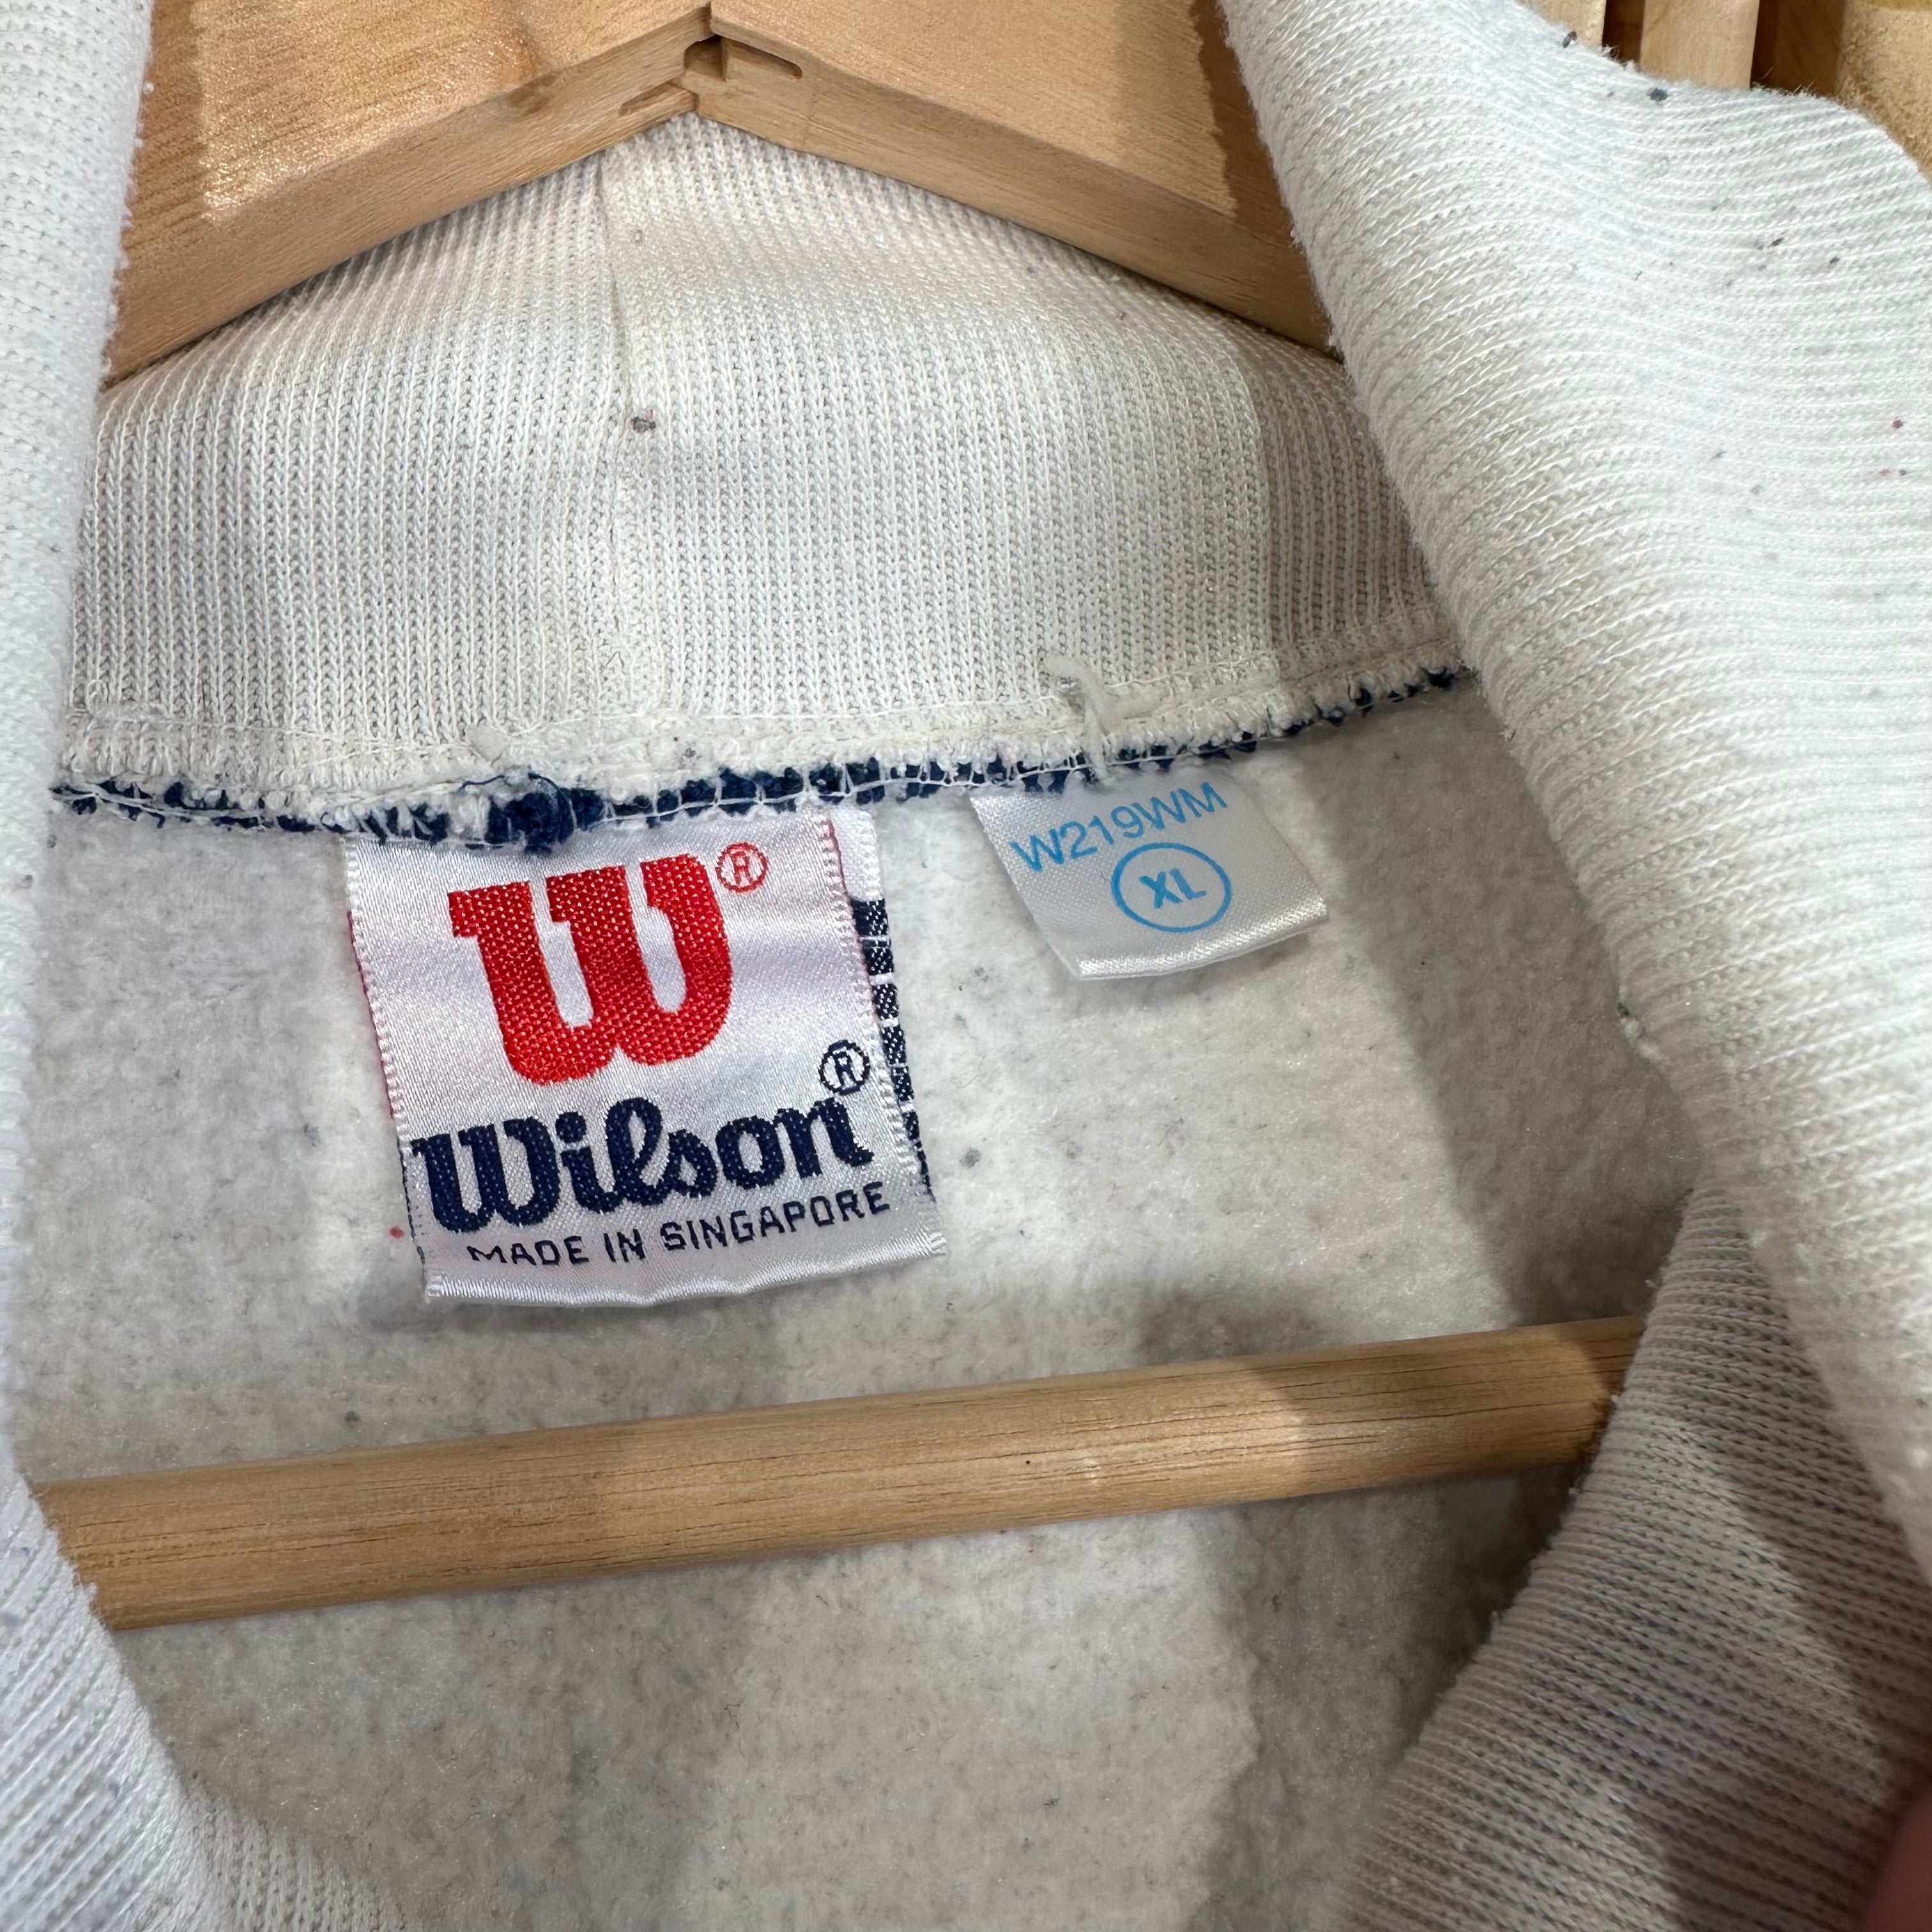 Wilson Adventure Crewneck Sweatshirt